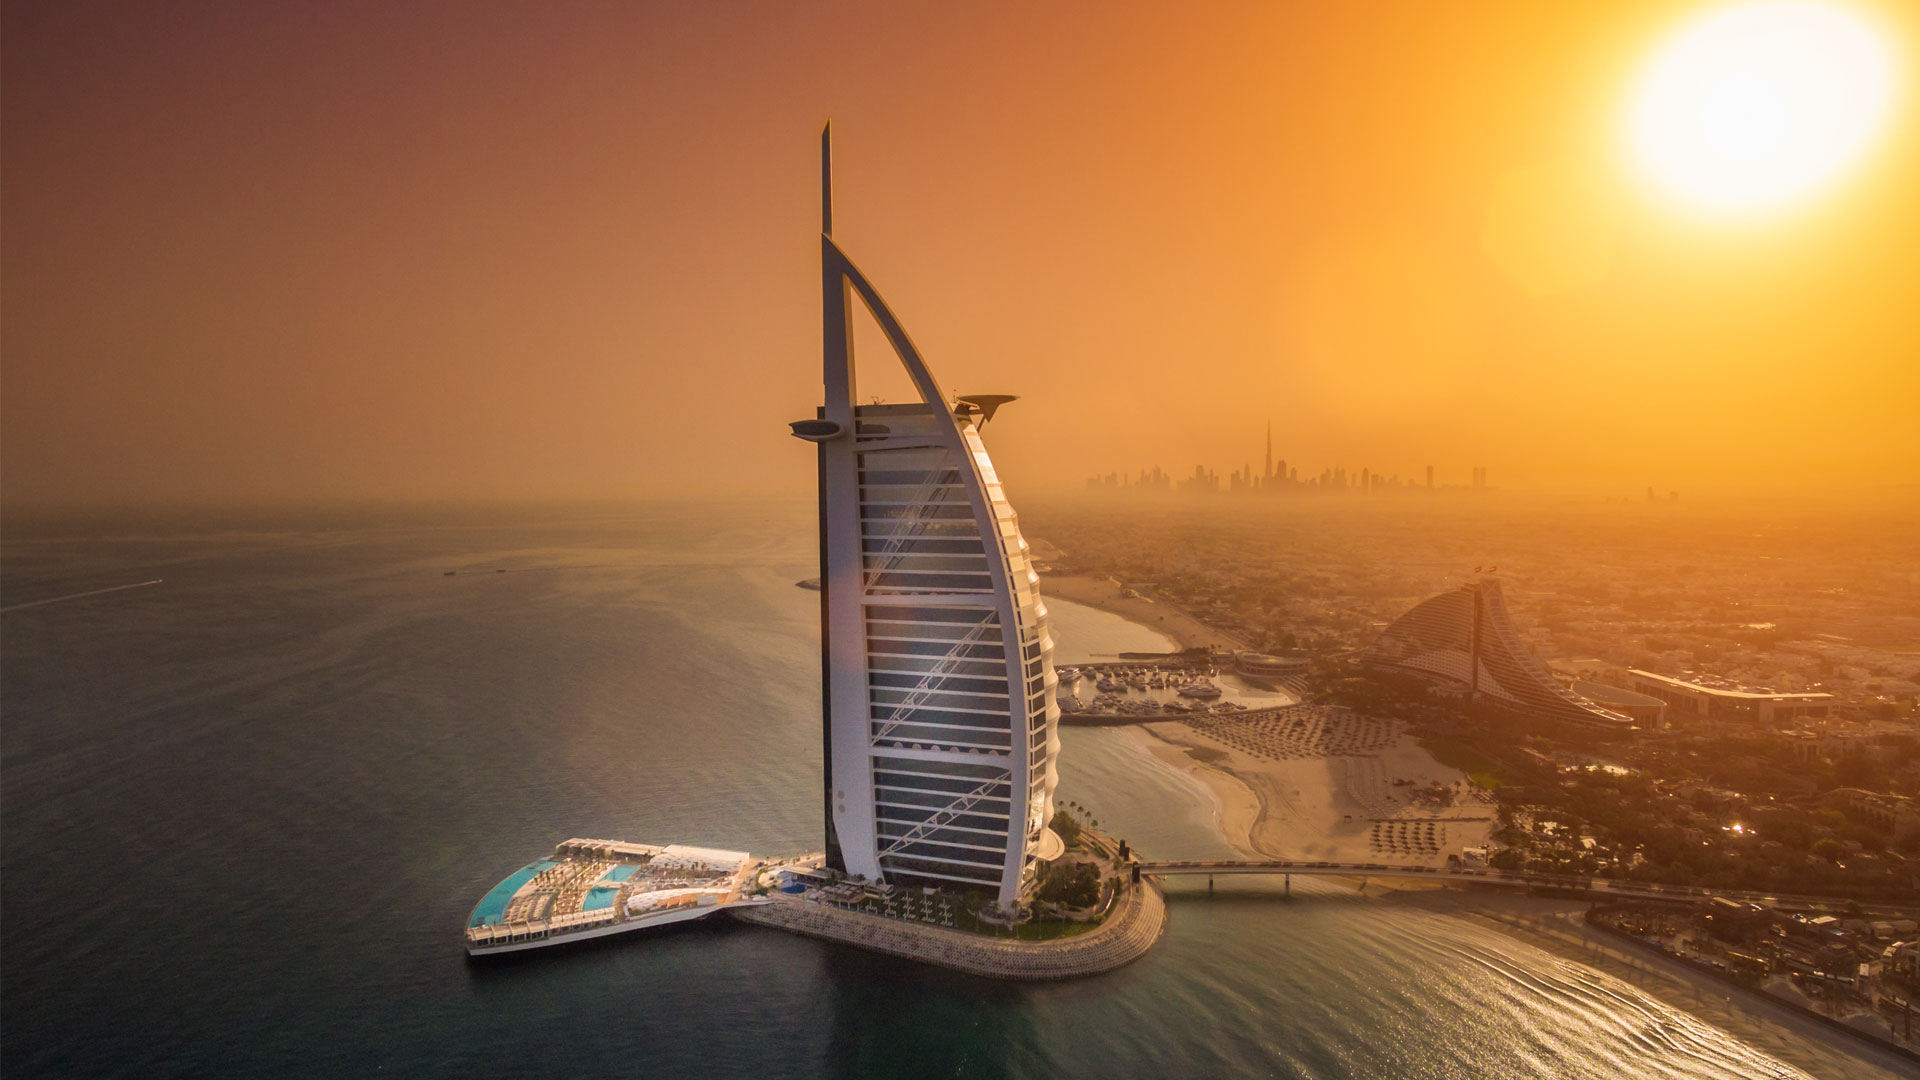 Dubai - Travel Tourism Business